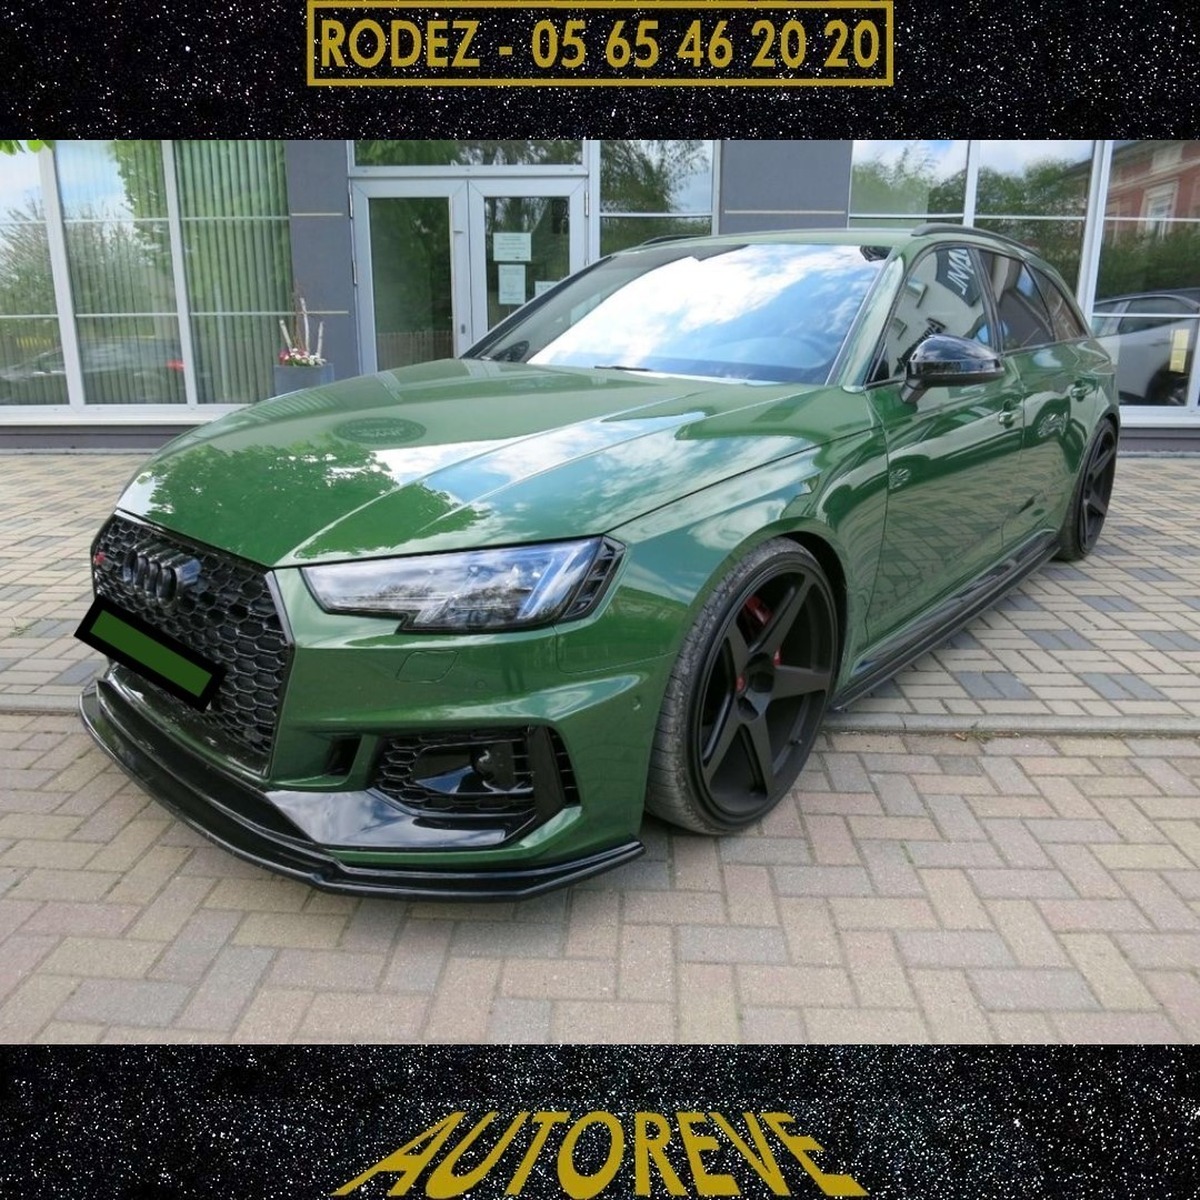 Audi - Rs4